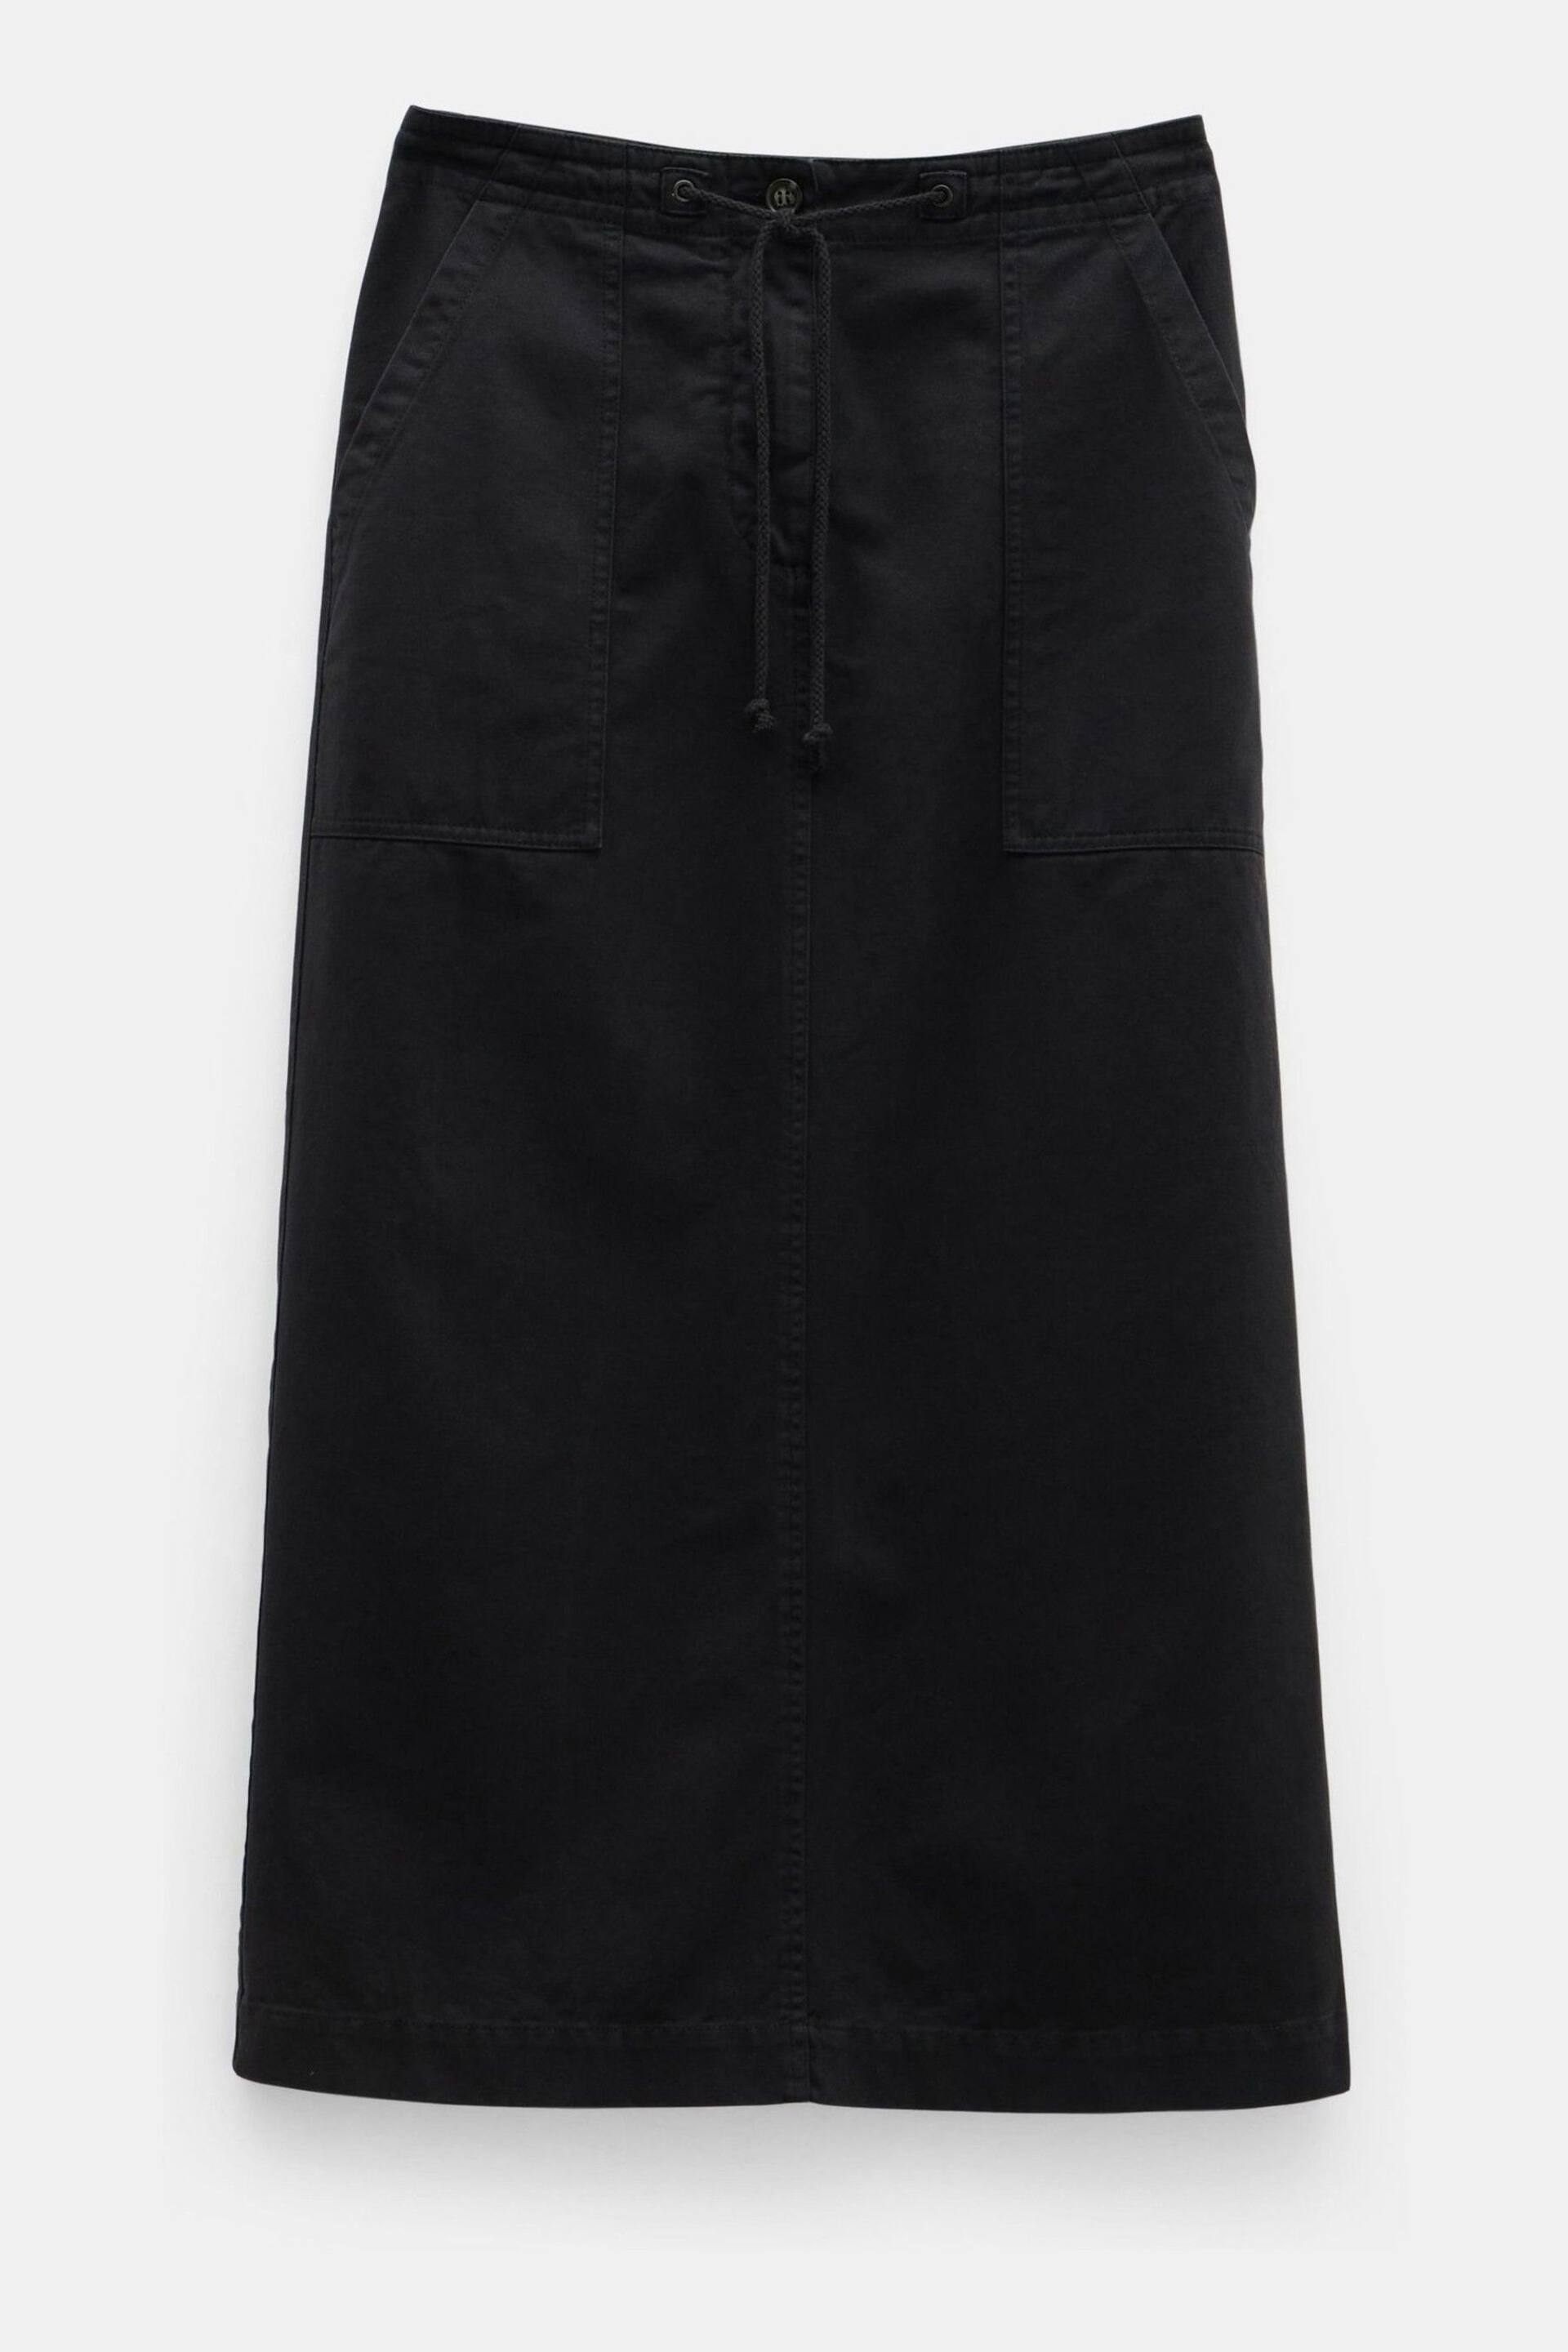 Hush Black Kristen Cargo Maxi Skirt - Image 5 of 5